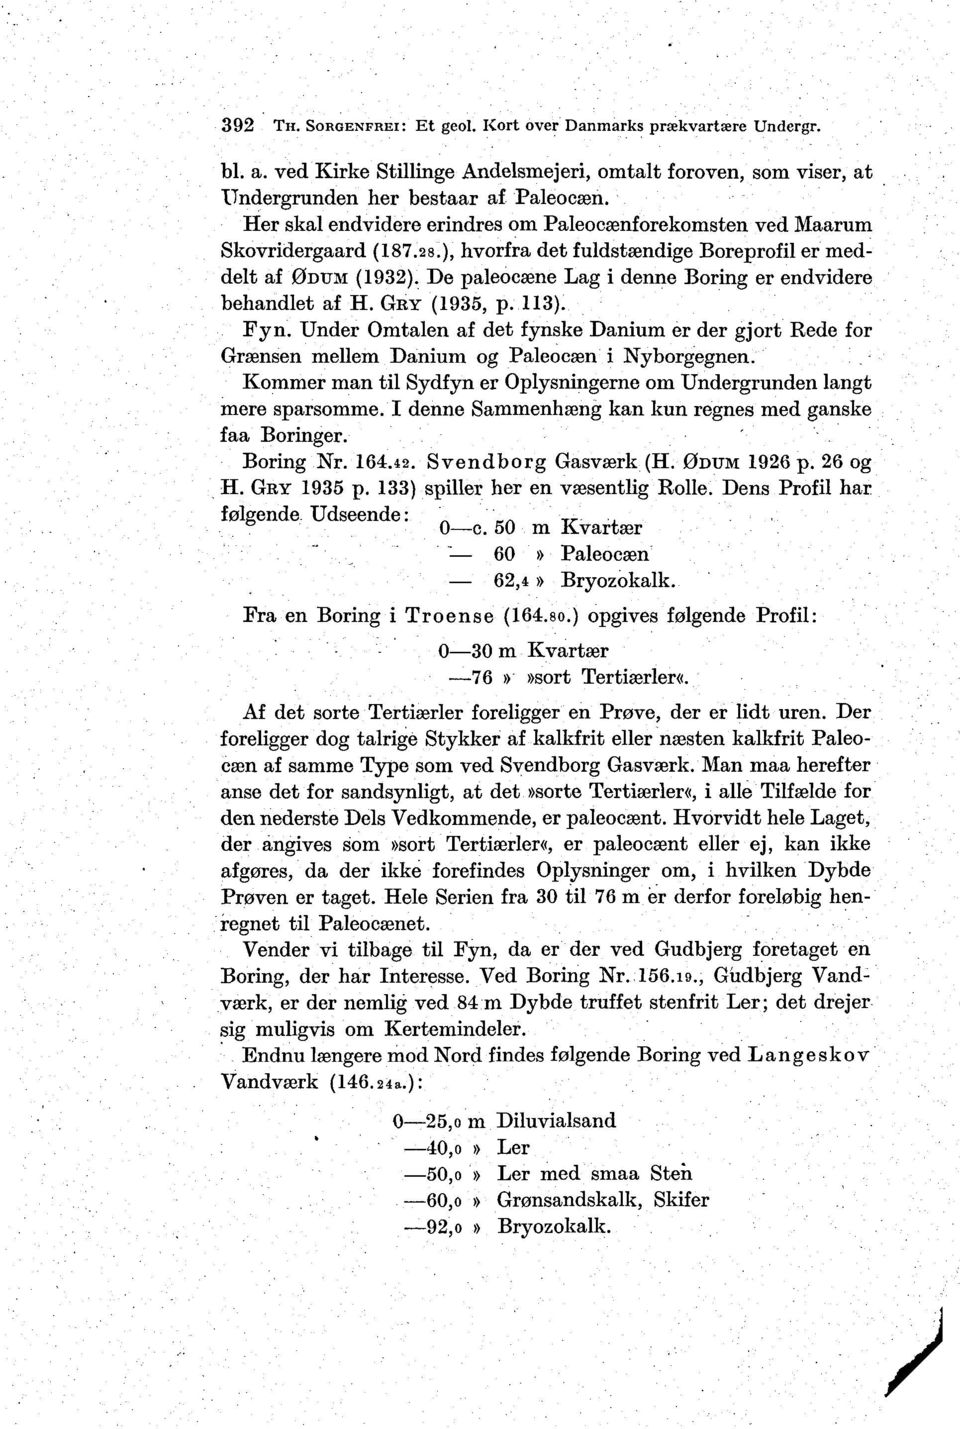 De paleocæne Lag i denne Boring er endvidere behandlet af H. GRY (1935, p. 113). Fyn. Under Omtalen af det fynske Danium er der gjort Rede for Grænsen mellem Danium og Paleocæn i Nyborgegnen.